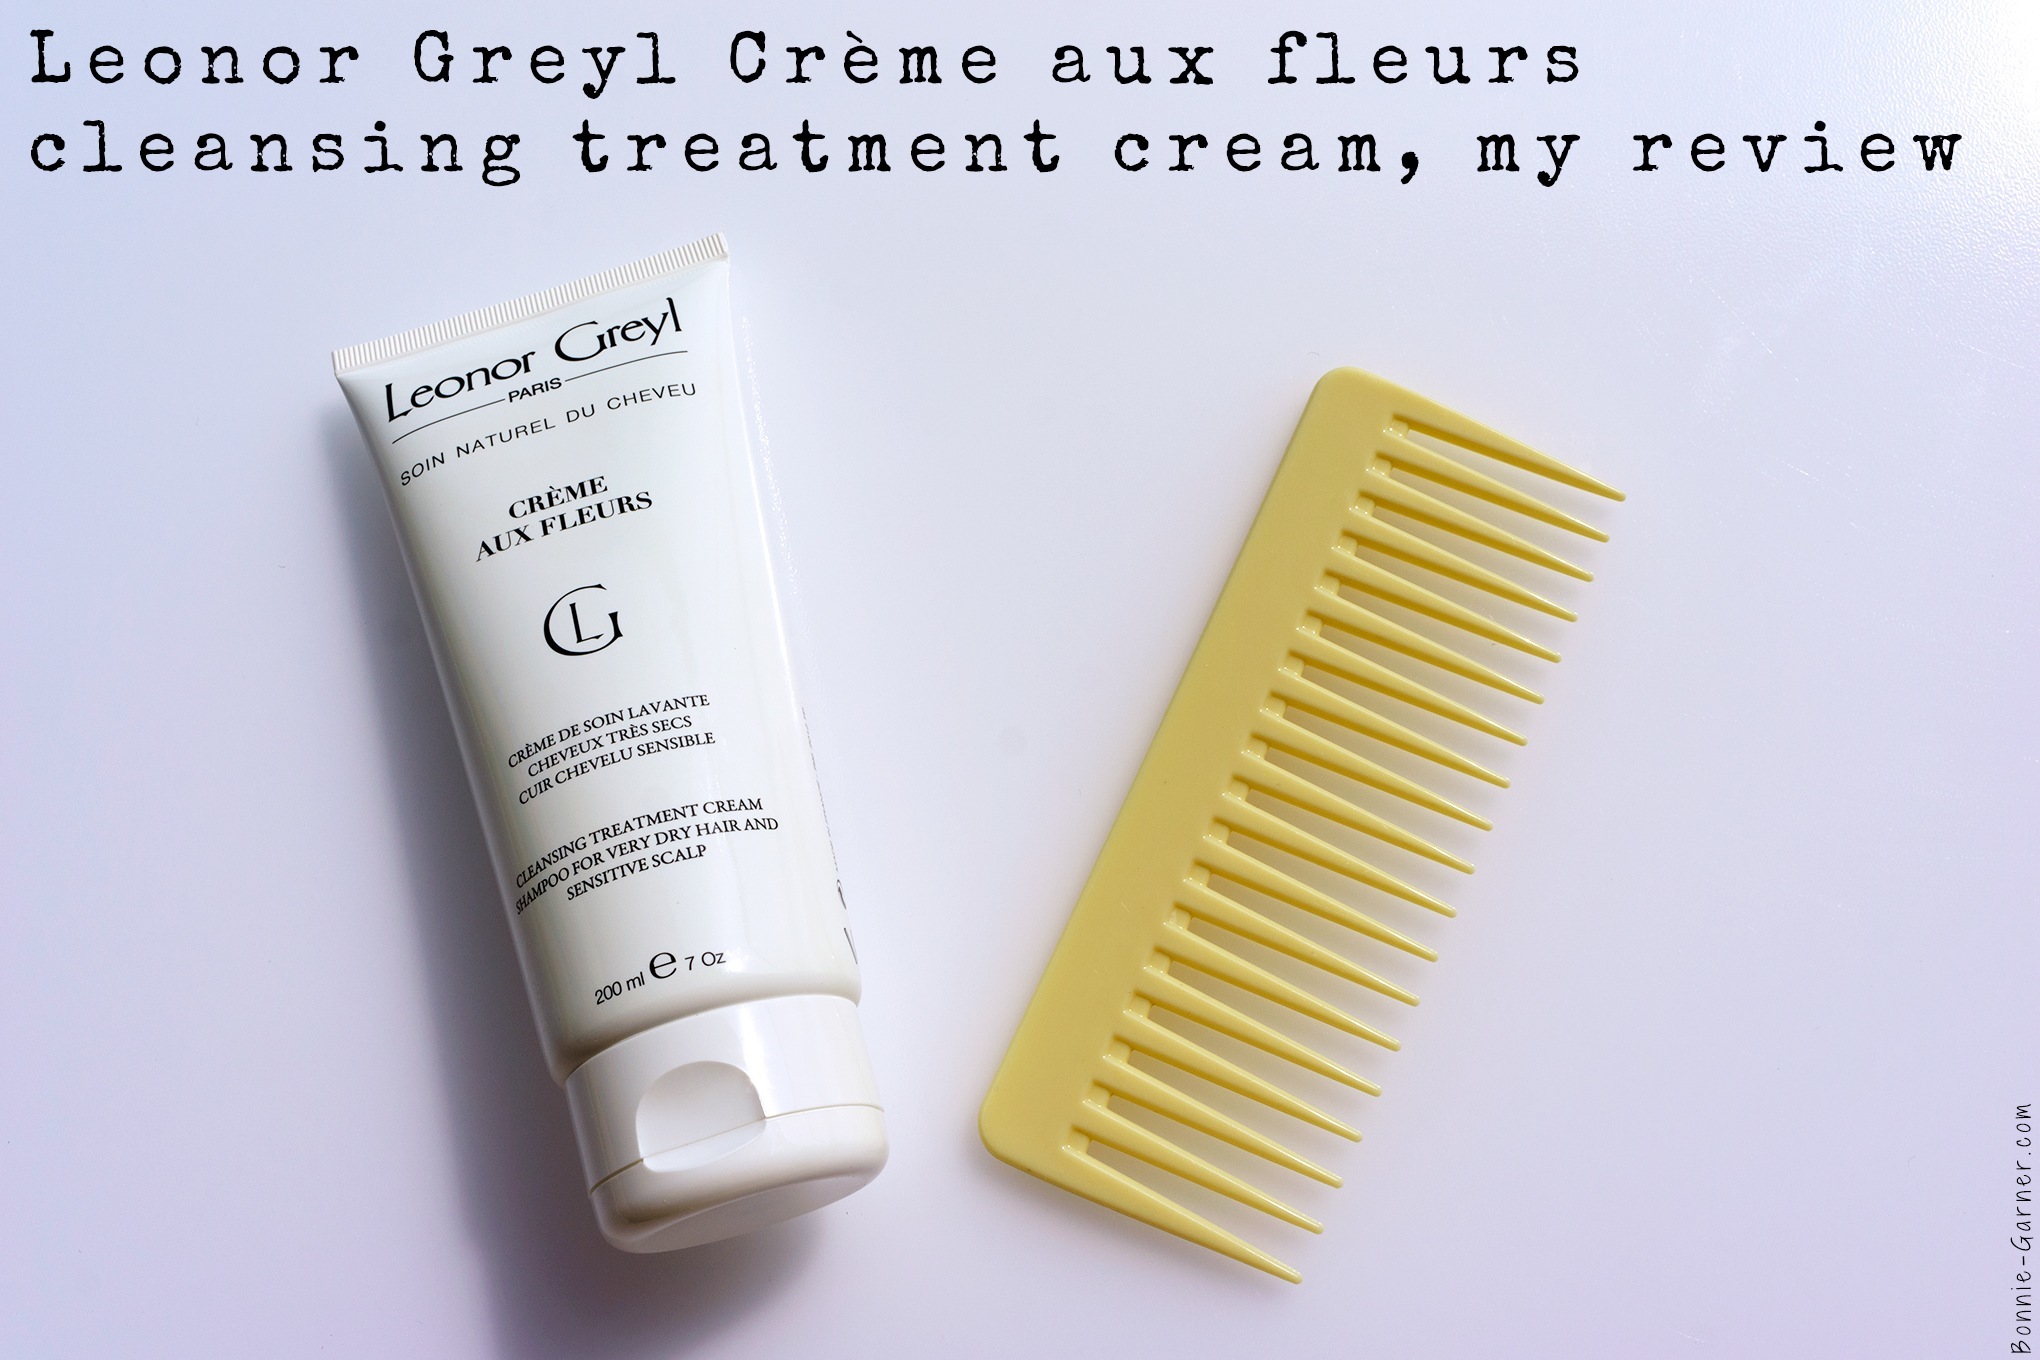 Leonor Greyl crème aux fleurs cleansing treatment cream, my review